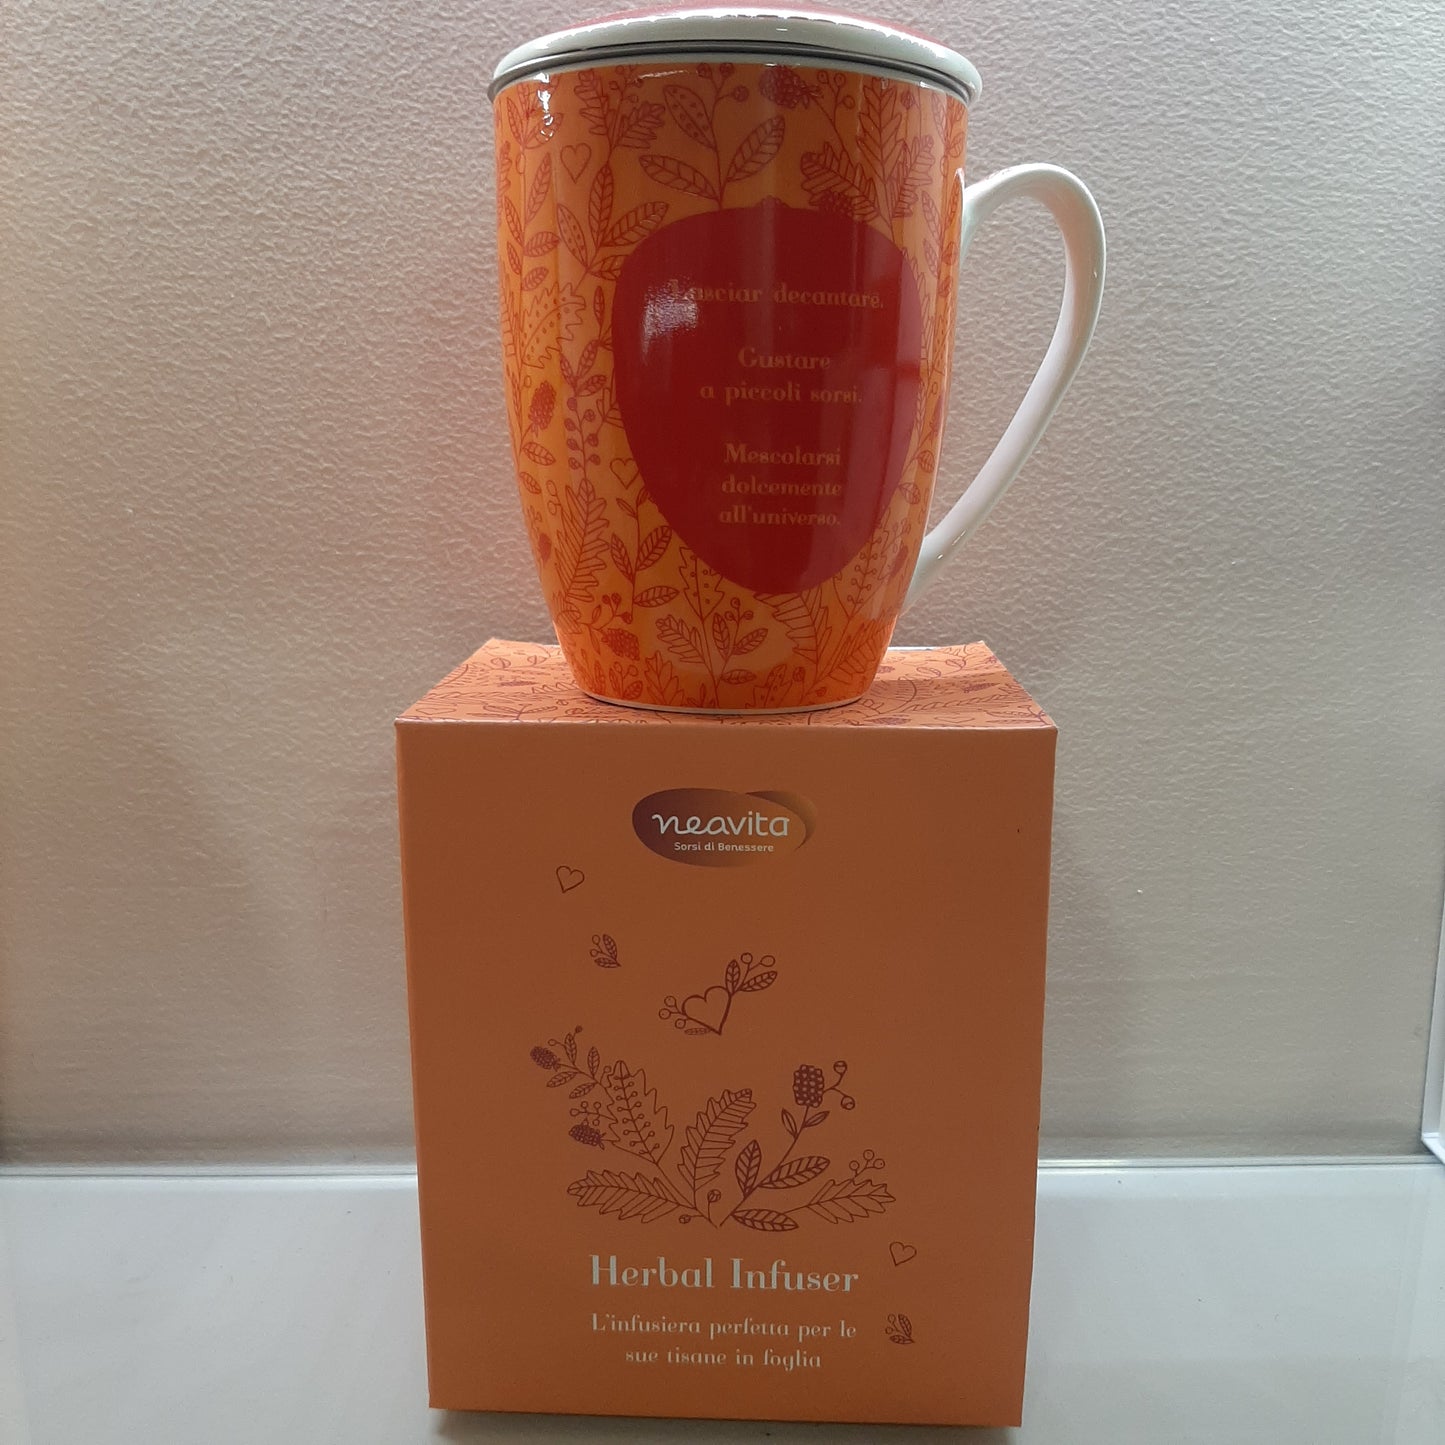 Neavita orange leaf herbal tea infuser